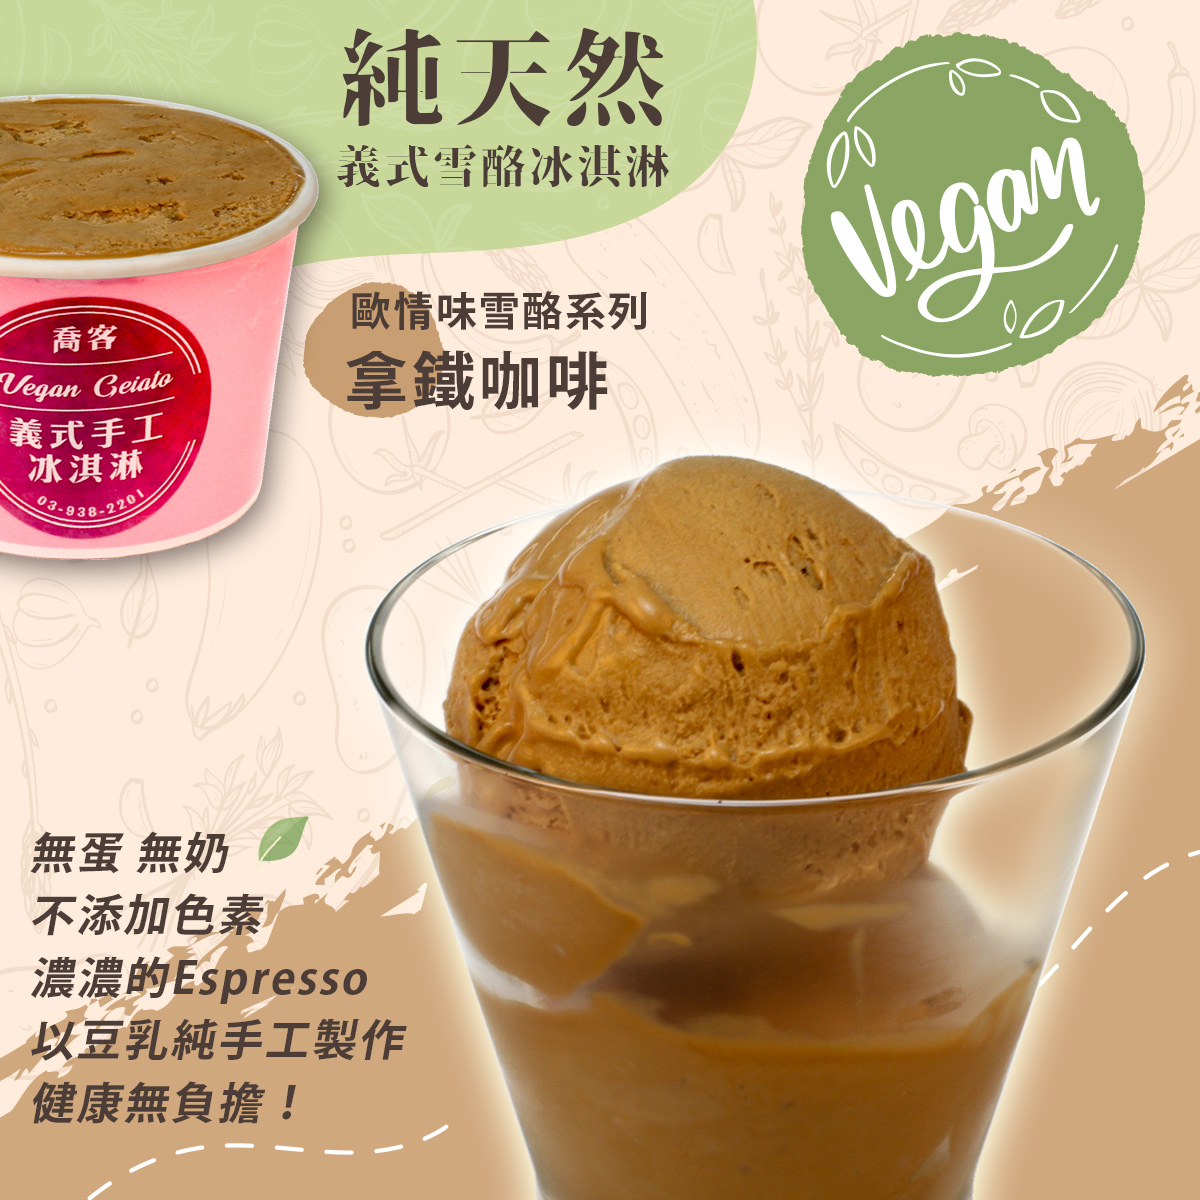 【喬客】歐情味雪酪系列-拿鐵咖啡 冰淇淋